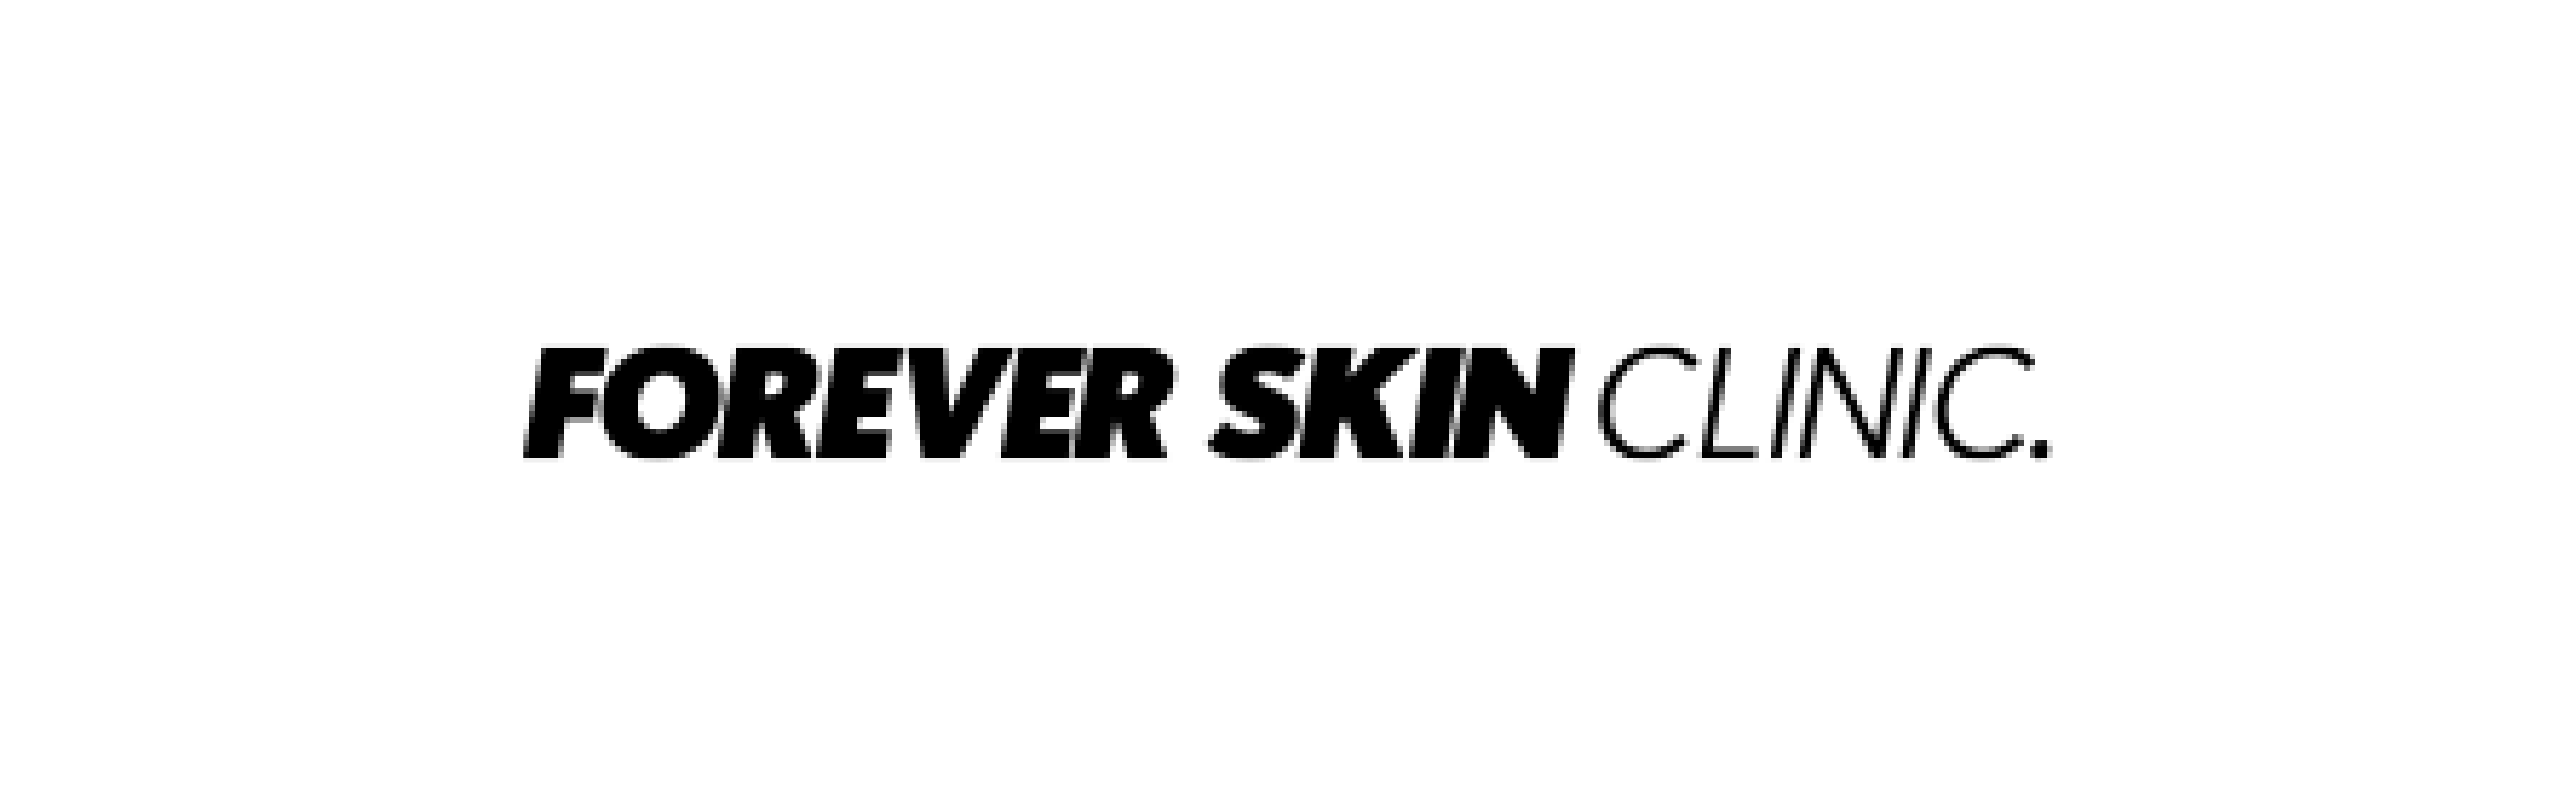 Forever Skin Clinic